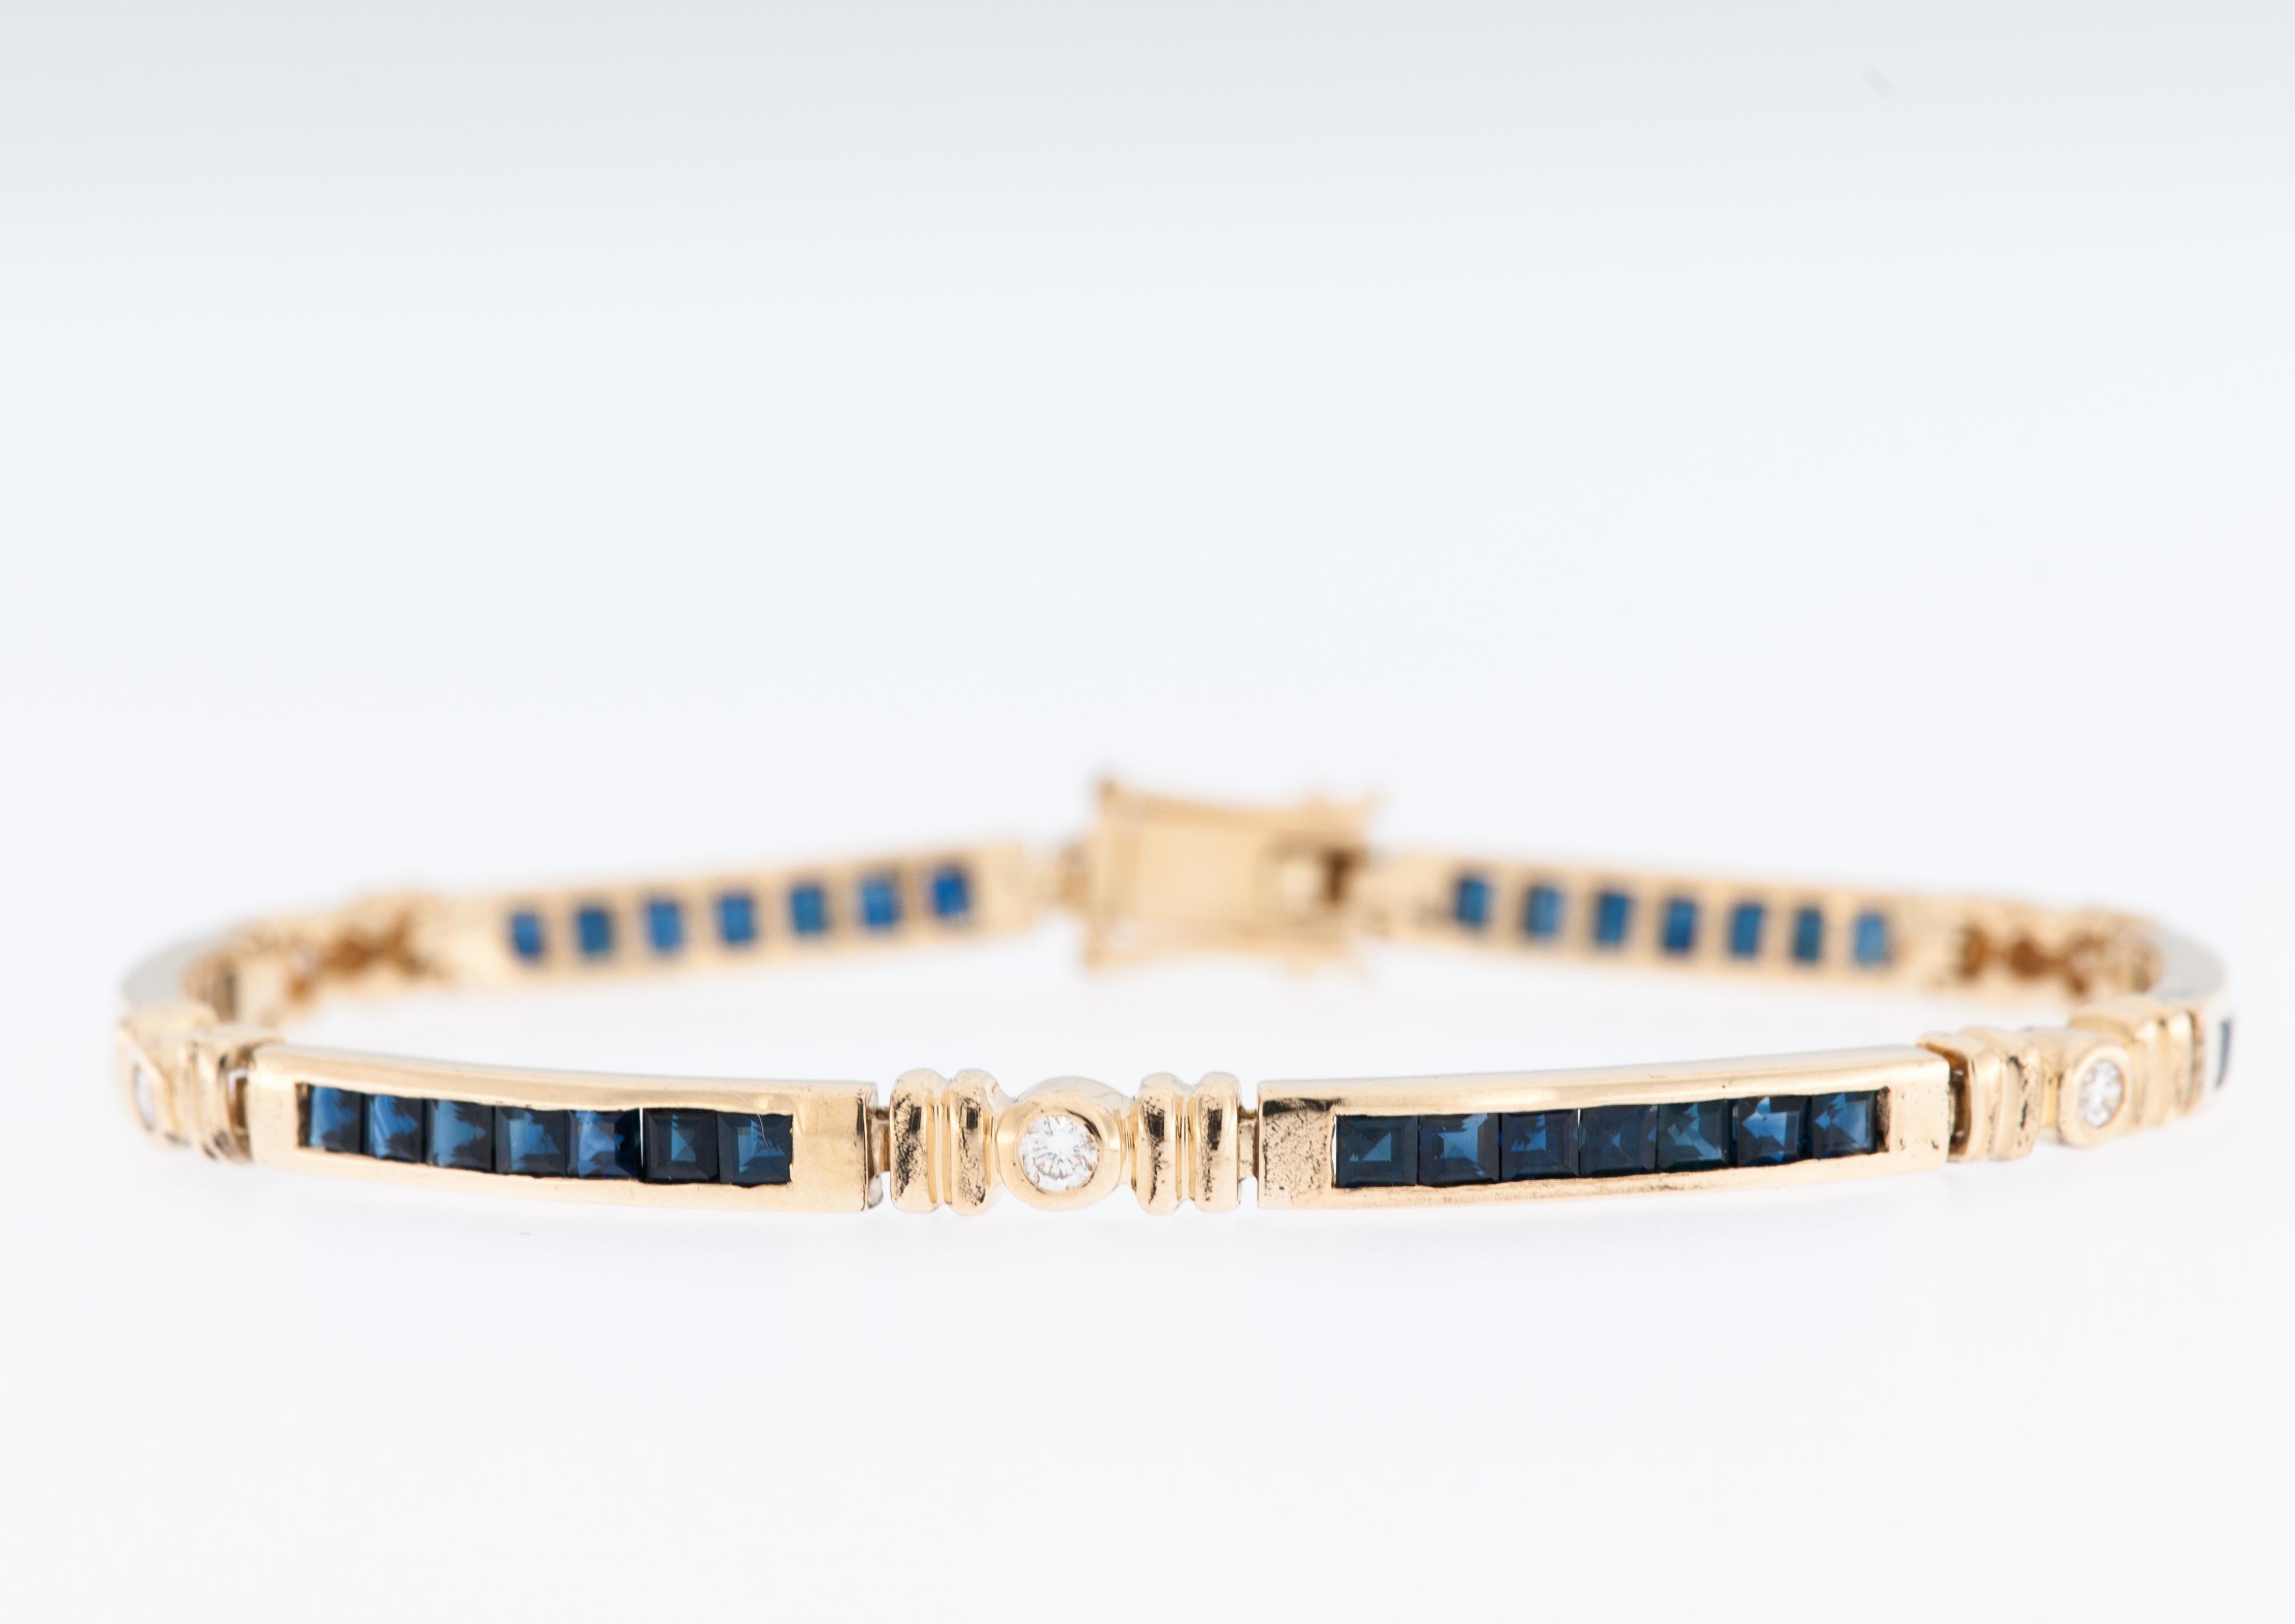 Das Retro French Armband ist ein zeitloses und exquisites Stück aus 18-karätigem Gelbgold, das eine perfekte Mischung aus Raffinesse und Vintage-Charme bietet. Das Armband ist mit einer Kombination aus Diamanten und Saphiren verziert, die sorgfältig